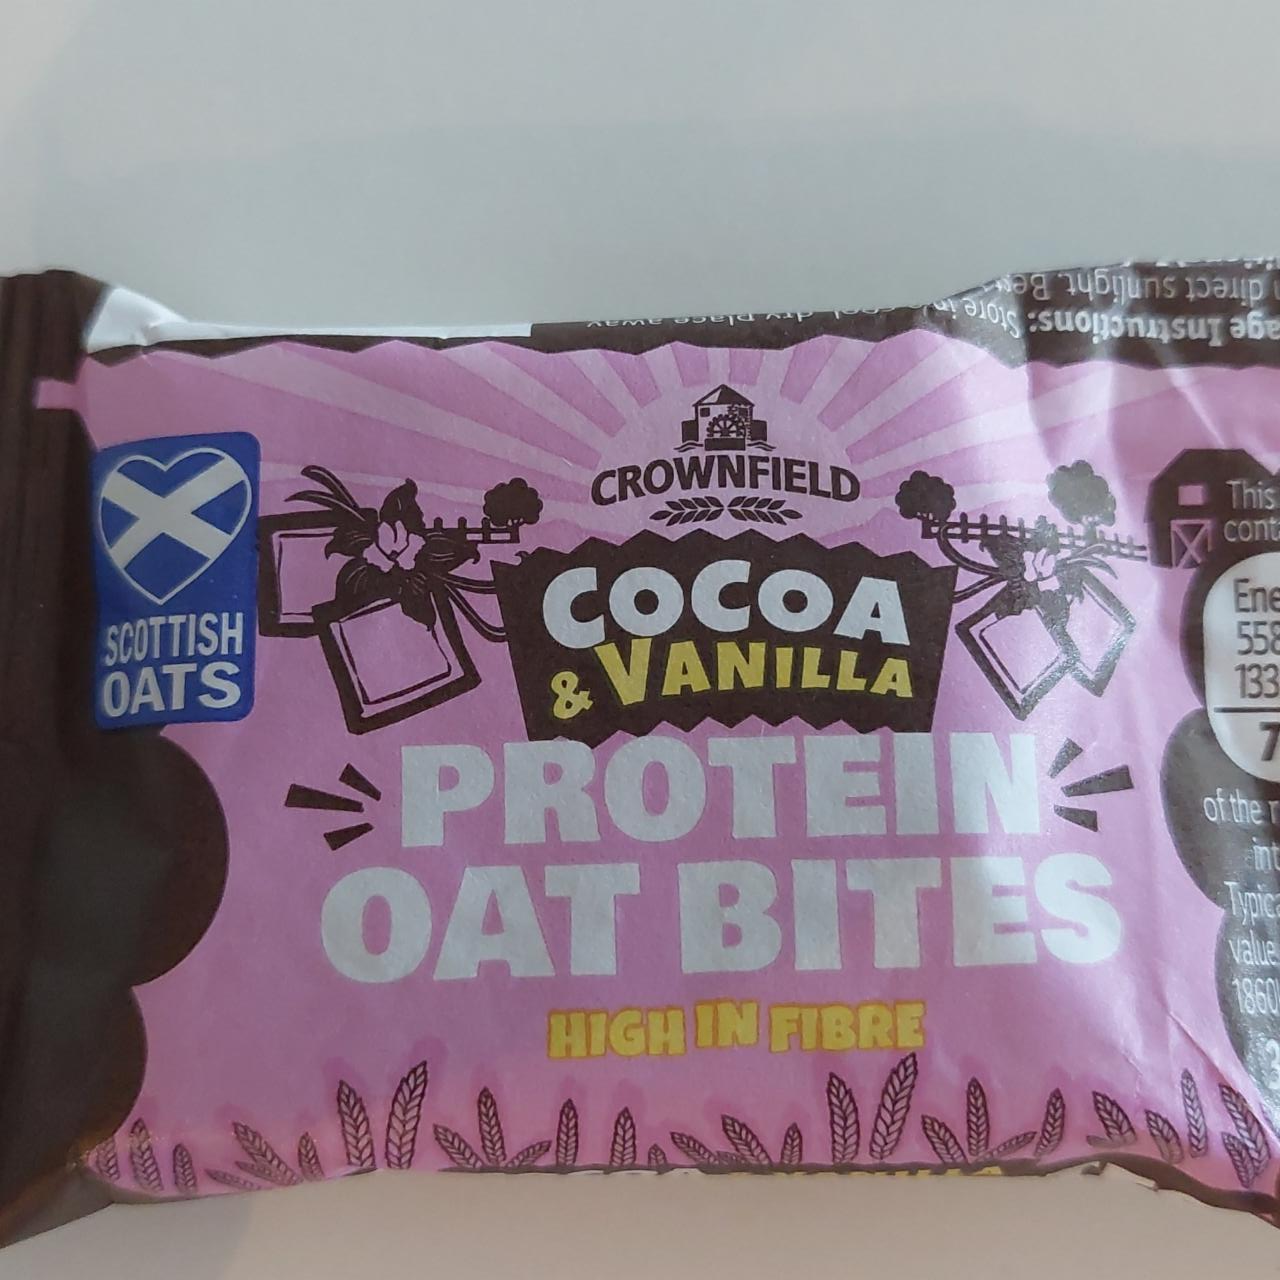 Fotografie - Protein oat bites Cocoa & Vanilla Crownfield